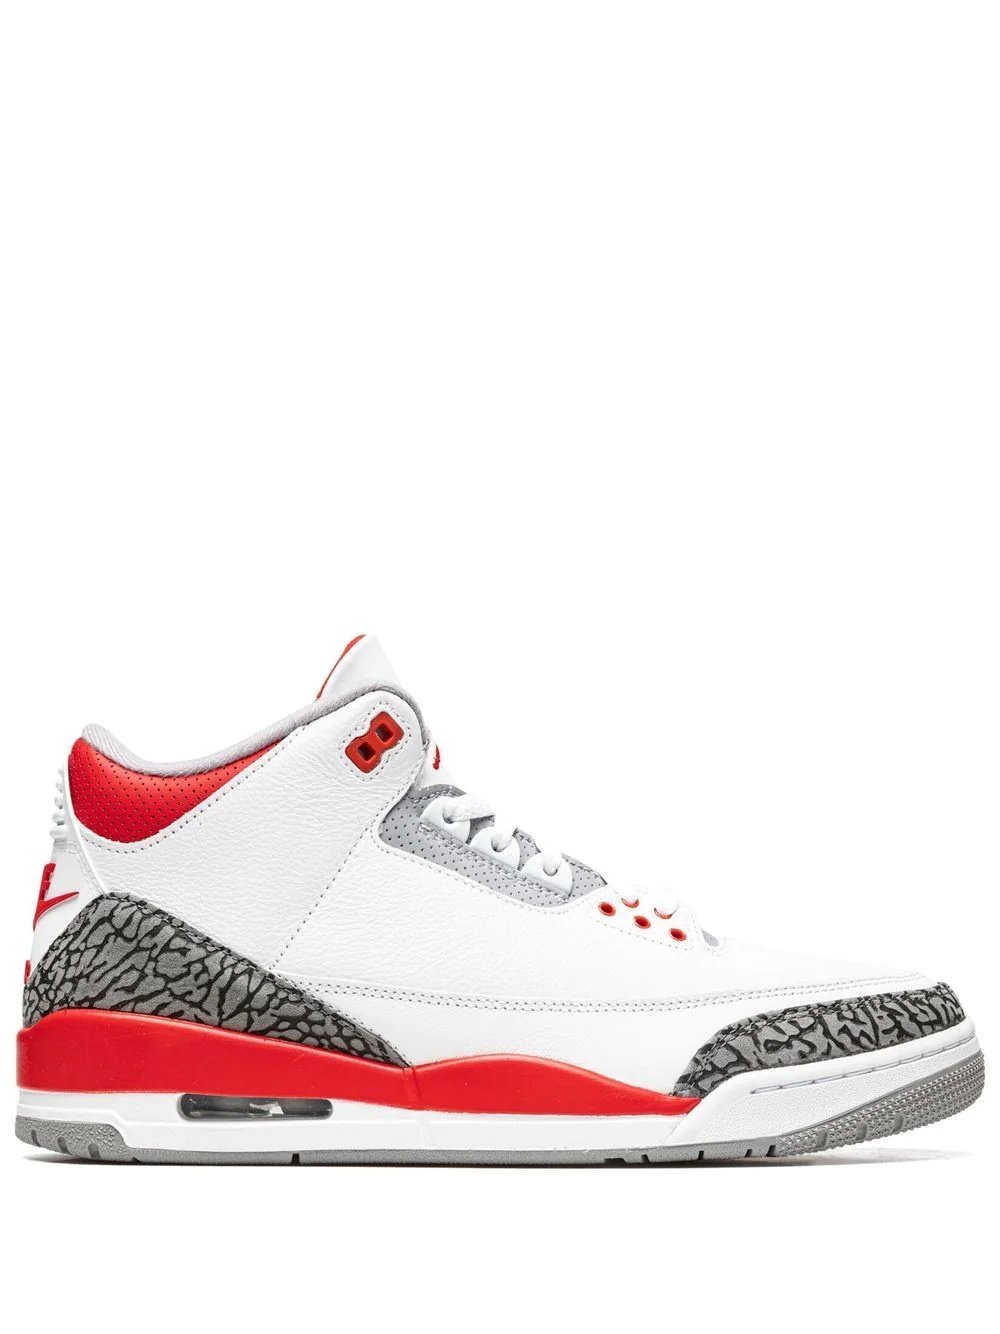 Air Jordan 3 Retro OG sneakers - 1